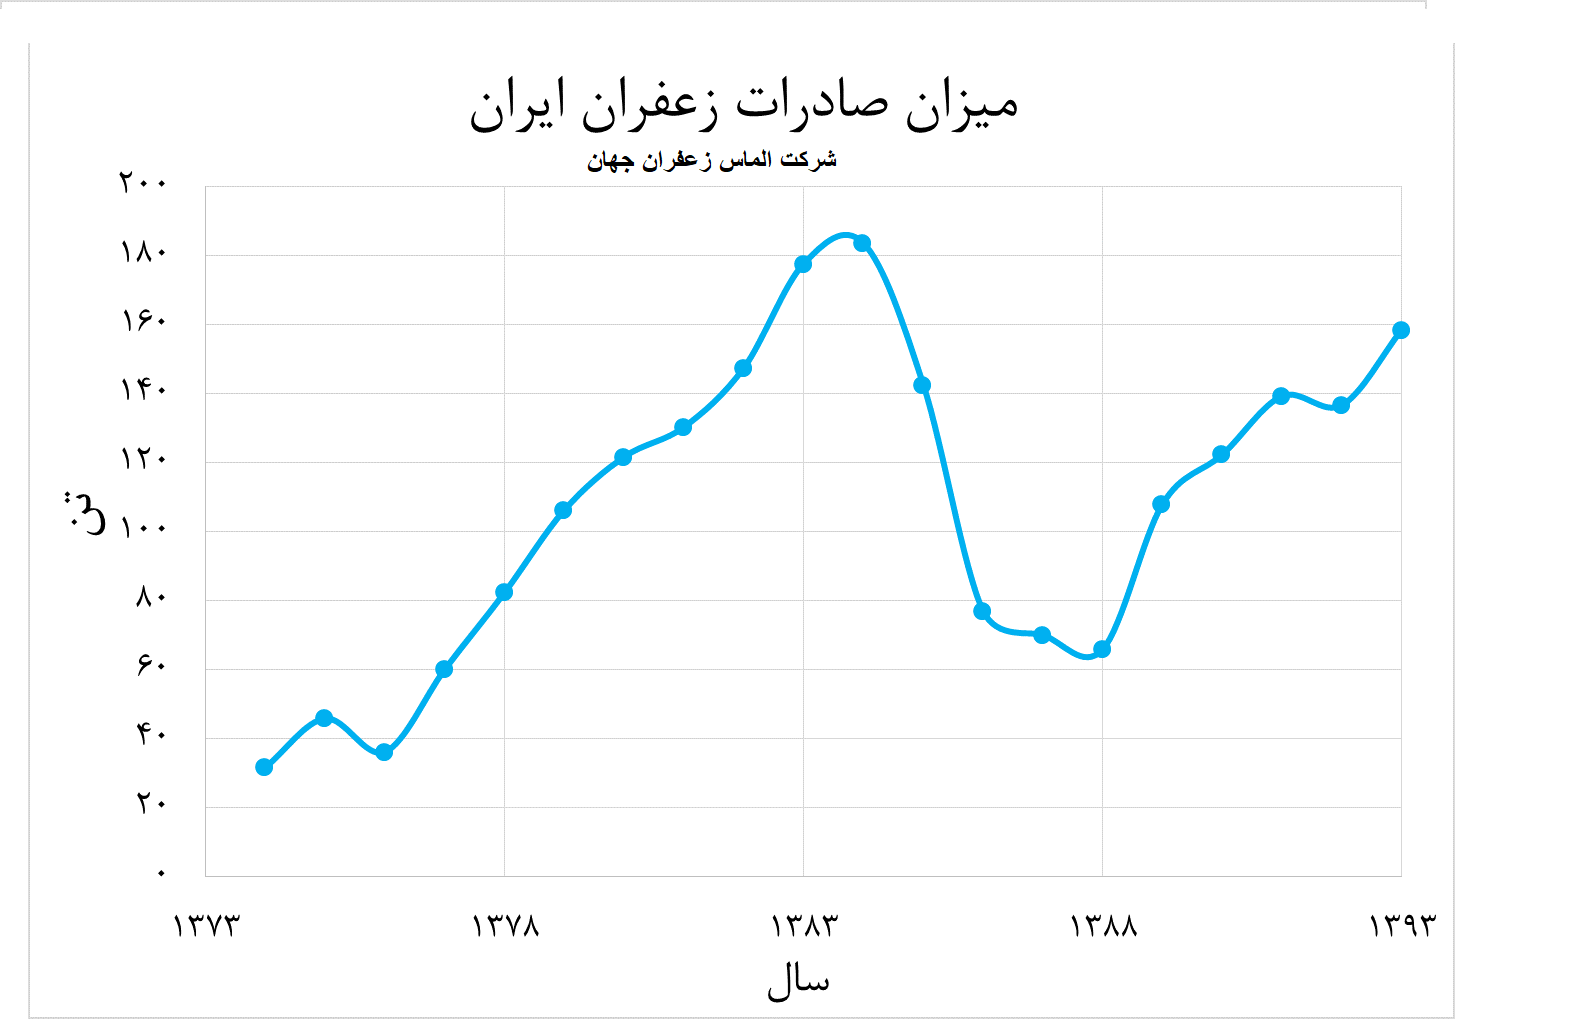 میزان صادرات زعفران ایران